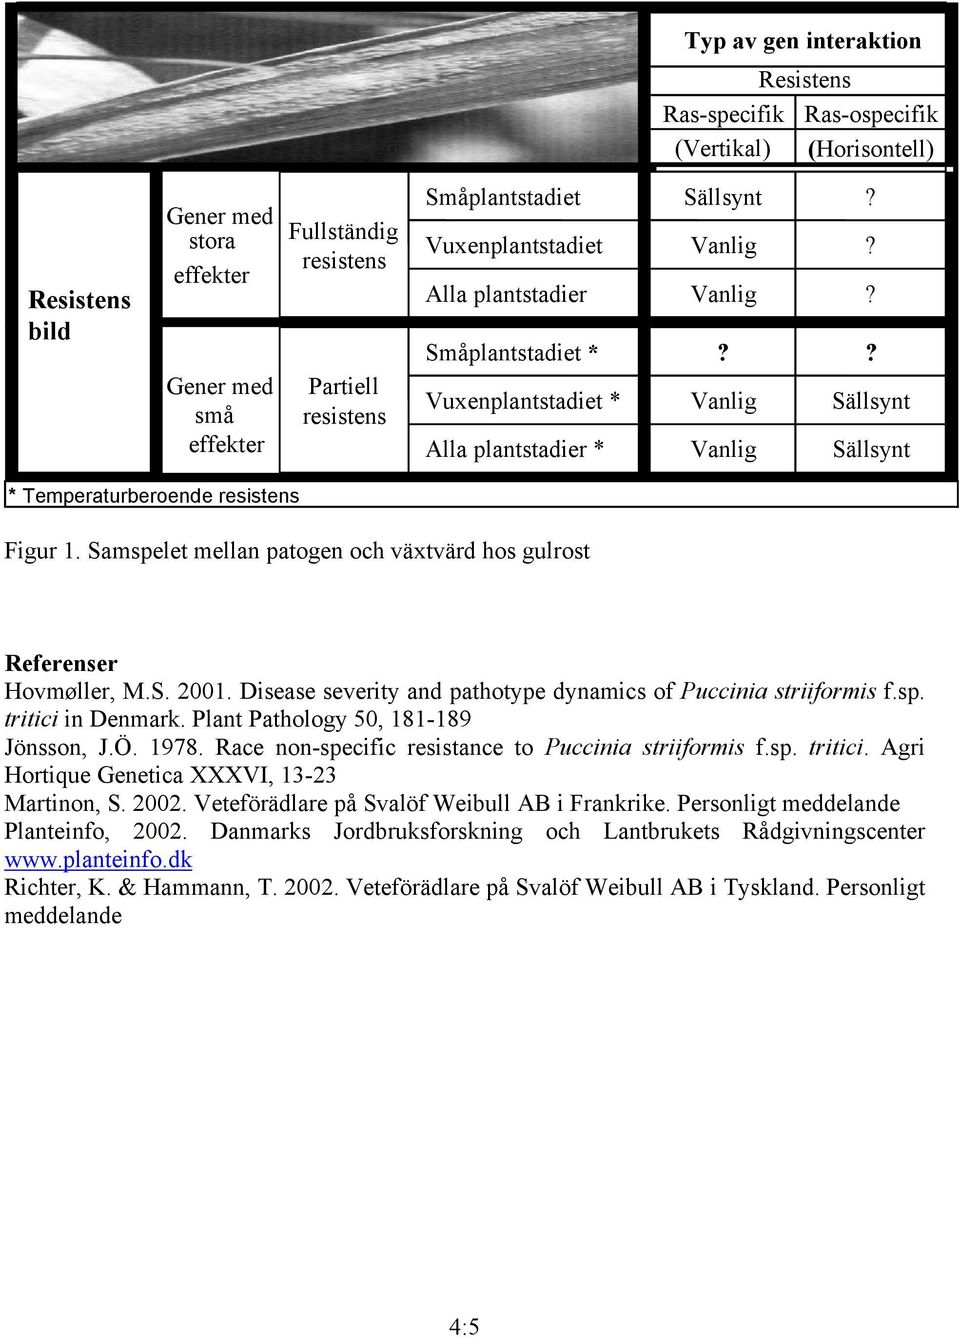 Samspelet mellan patogen och växtvärd hos gulrost Referenser Hovmøller, M.S. 2001. Disease severity and pathotype dynamics of Puccinia striiformis f.sp. tritici in Denmark.